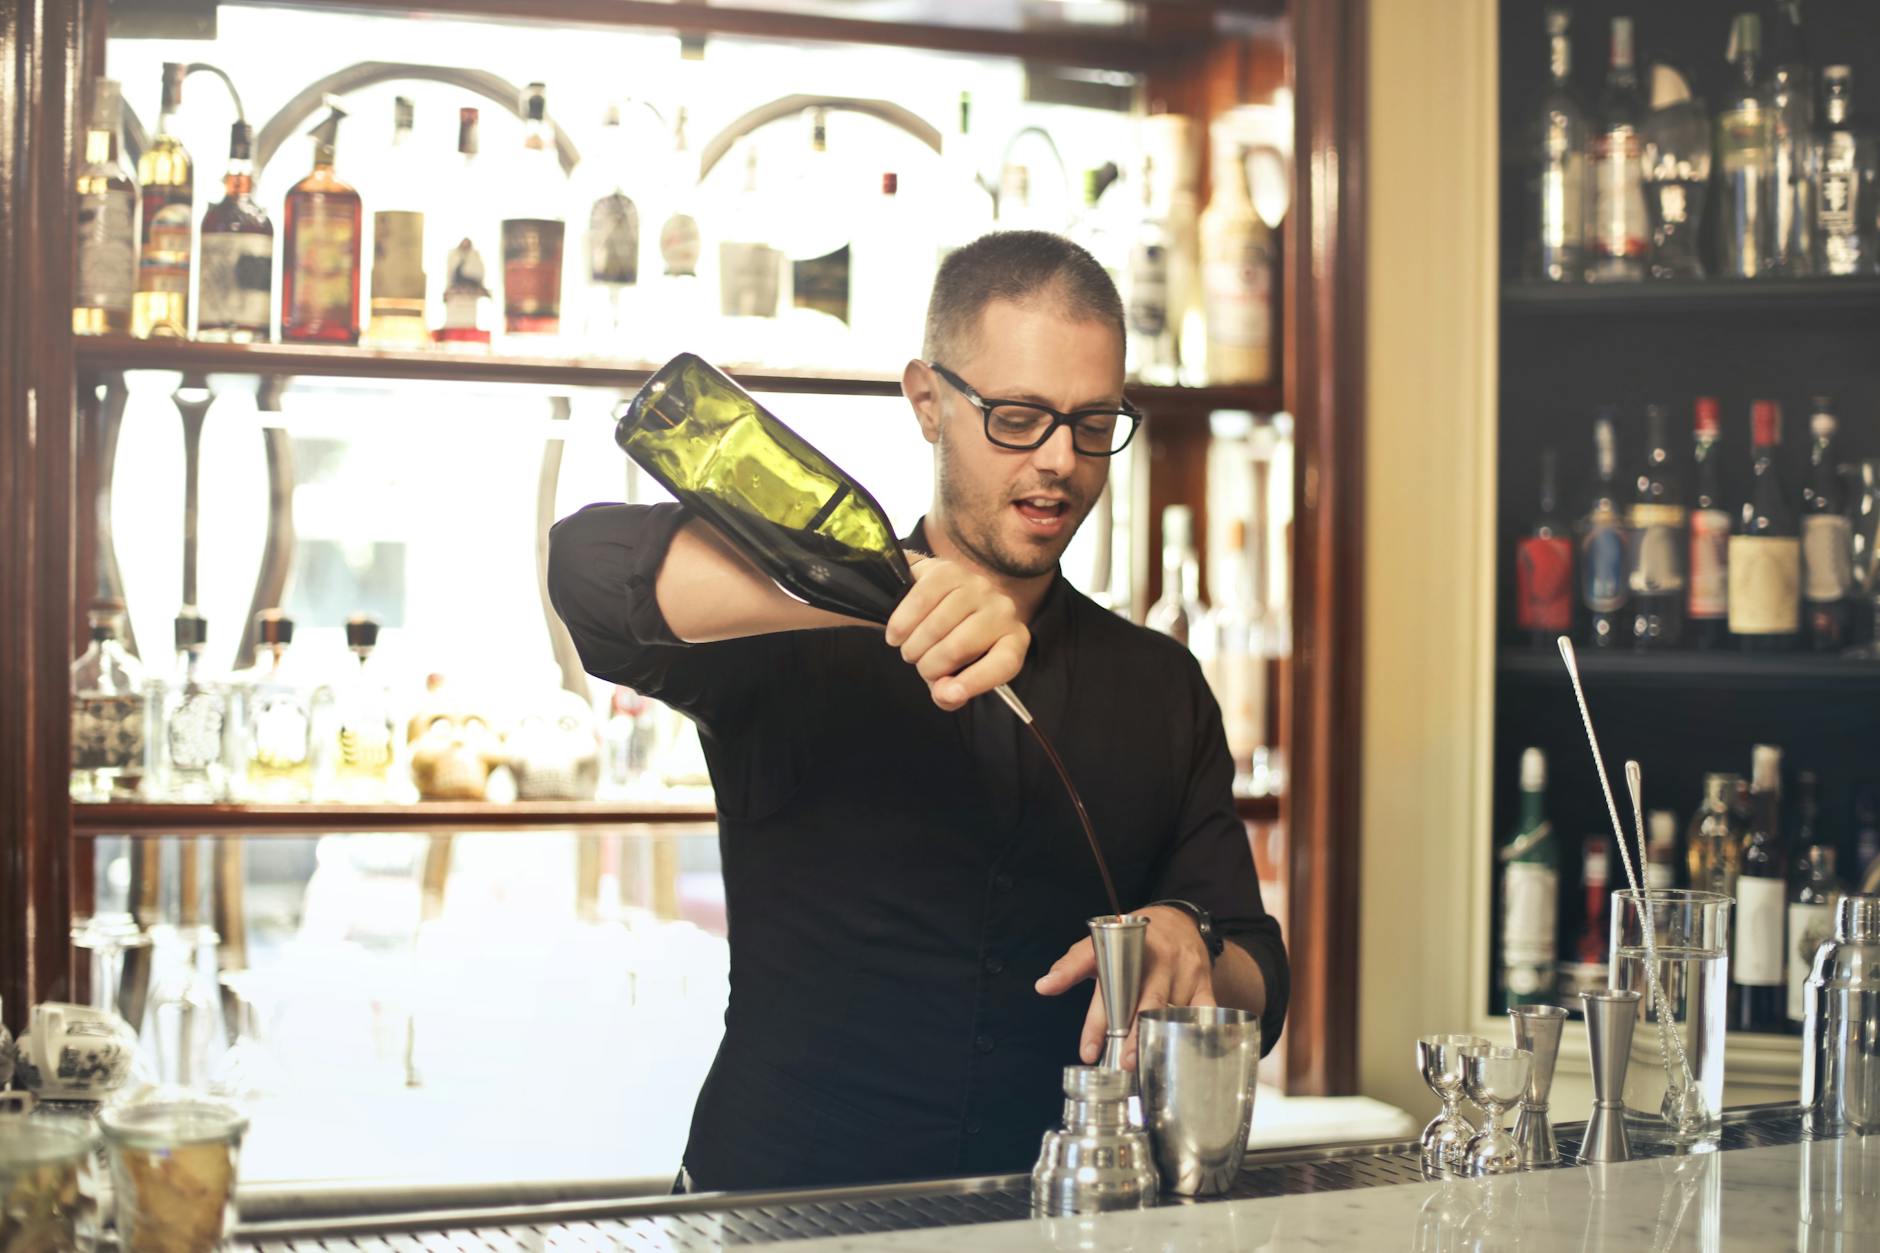 Barman preparing cocktail at counter